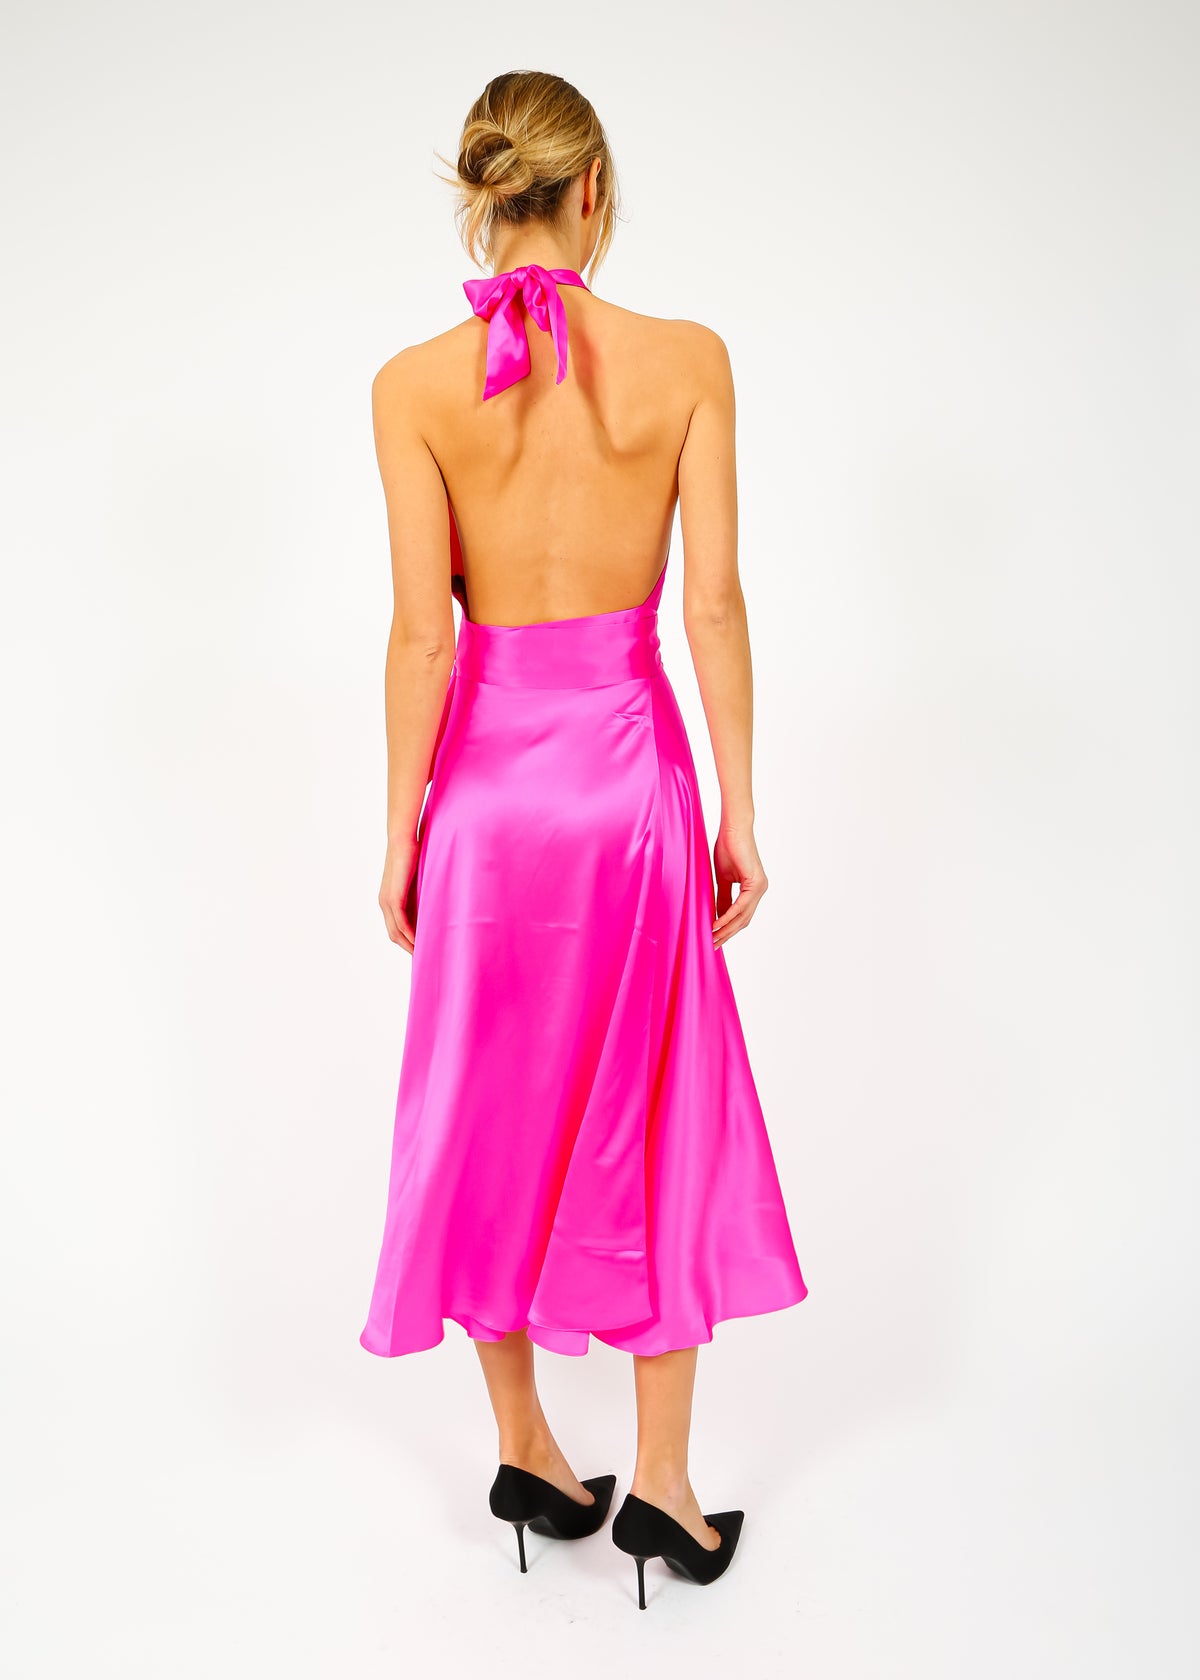 HARMUR Midi Wrap Dress in Pink Glow